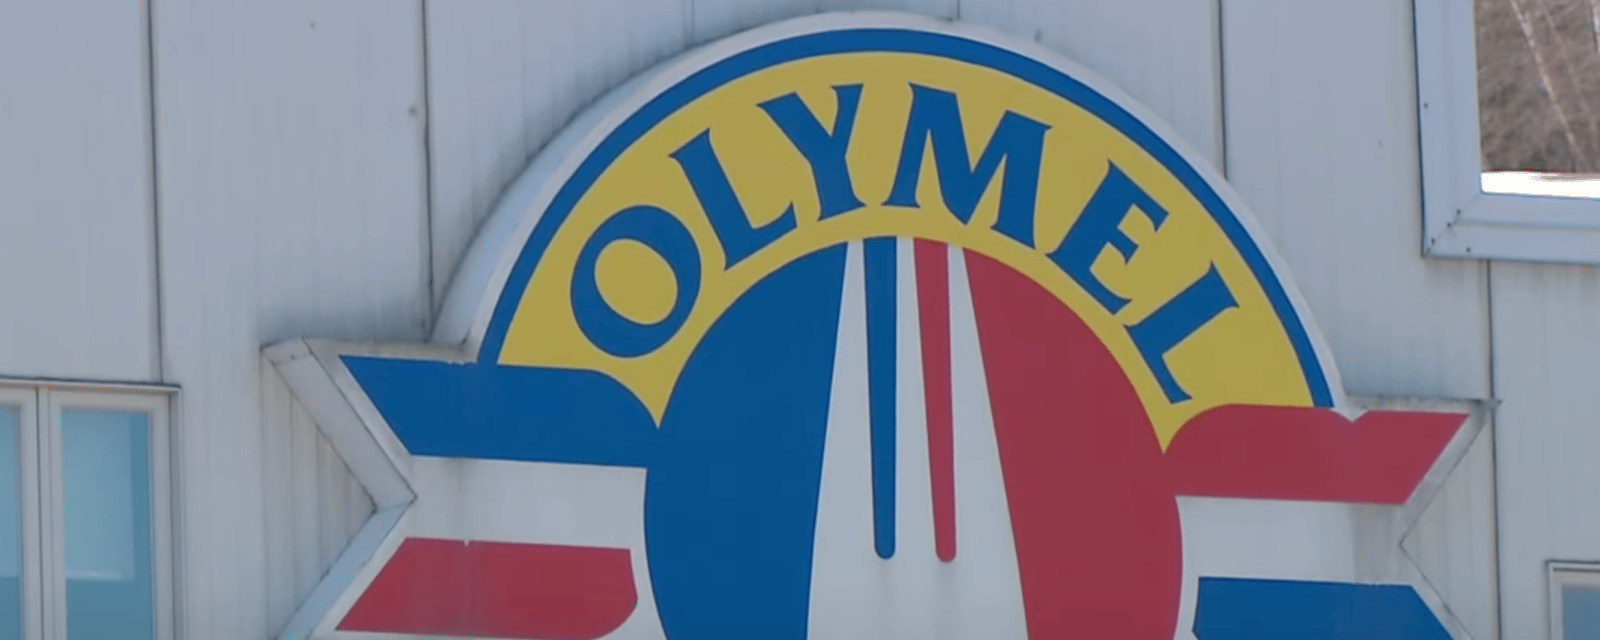 L'usine Olymel de Vallée-Jonction a officiellement fermé ses portes hier